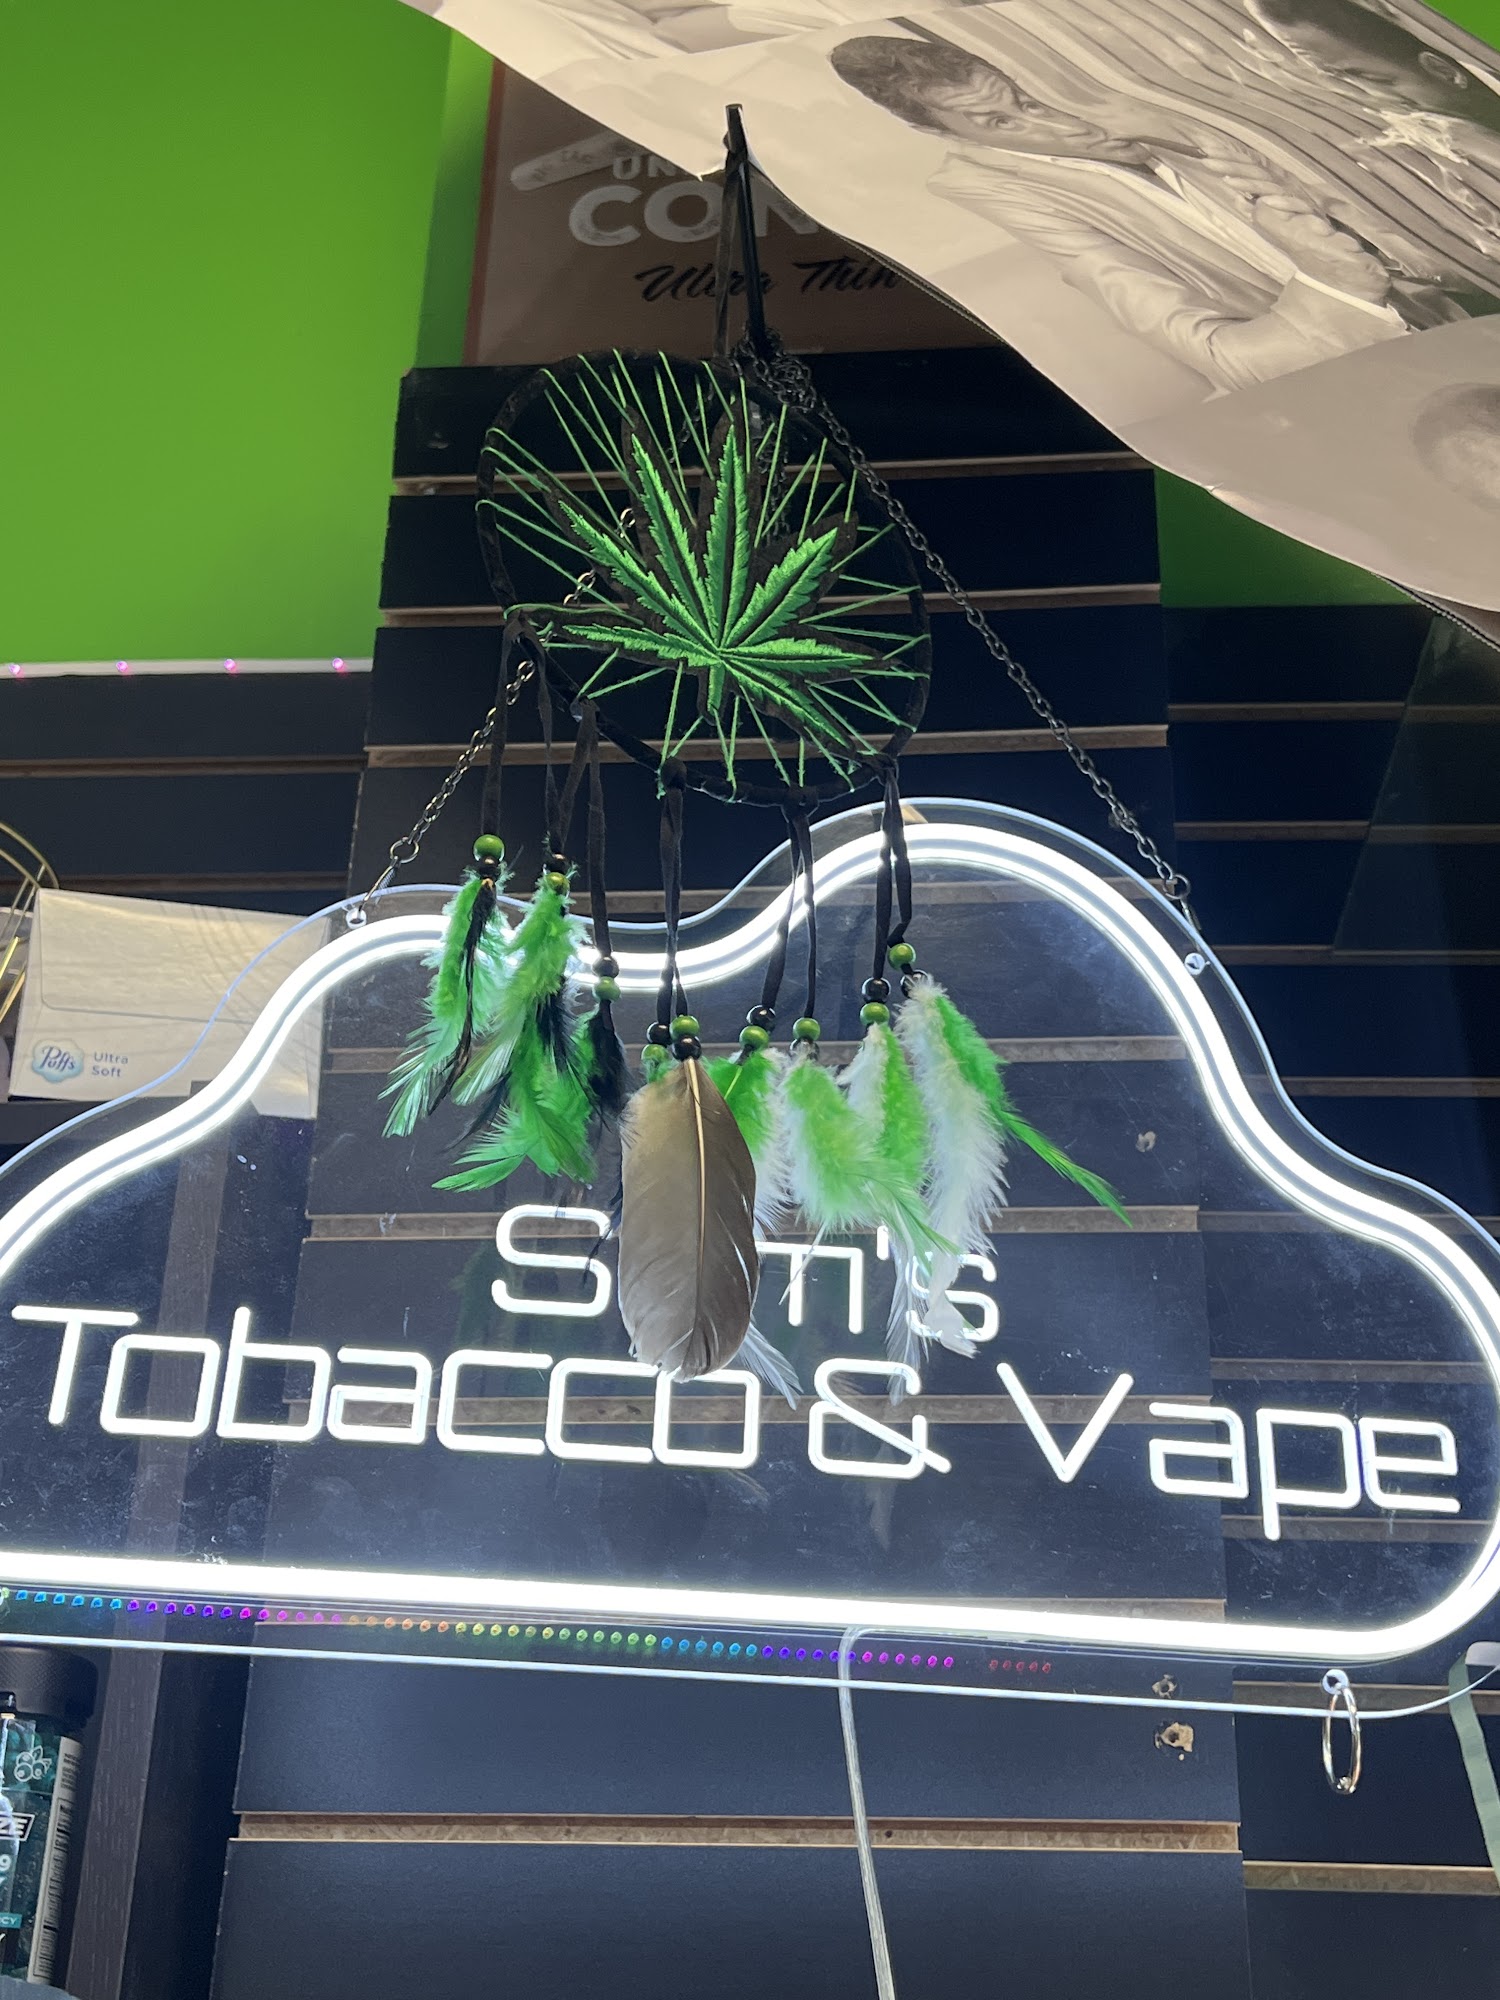 Sams Tobacco & Vape